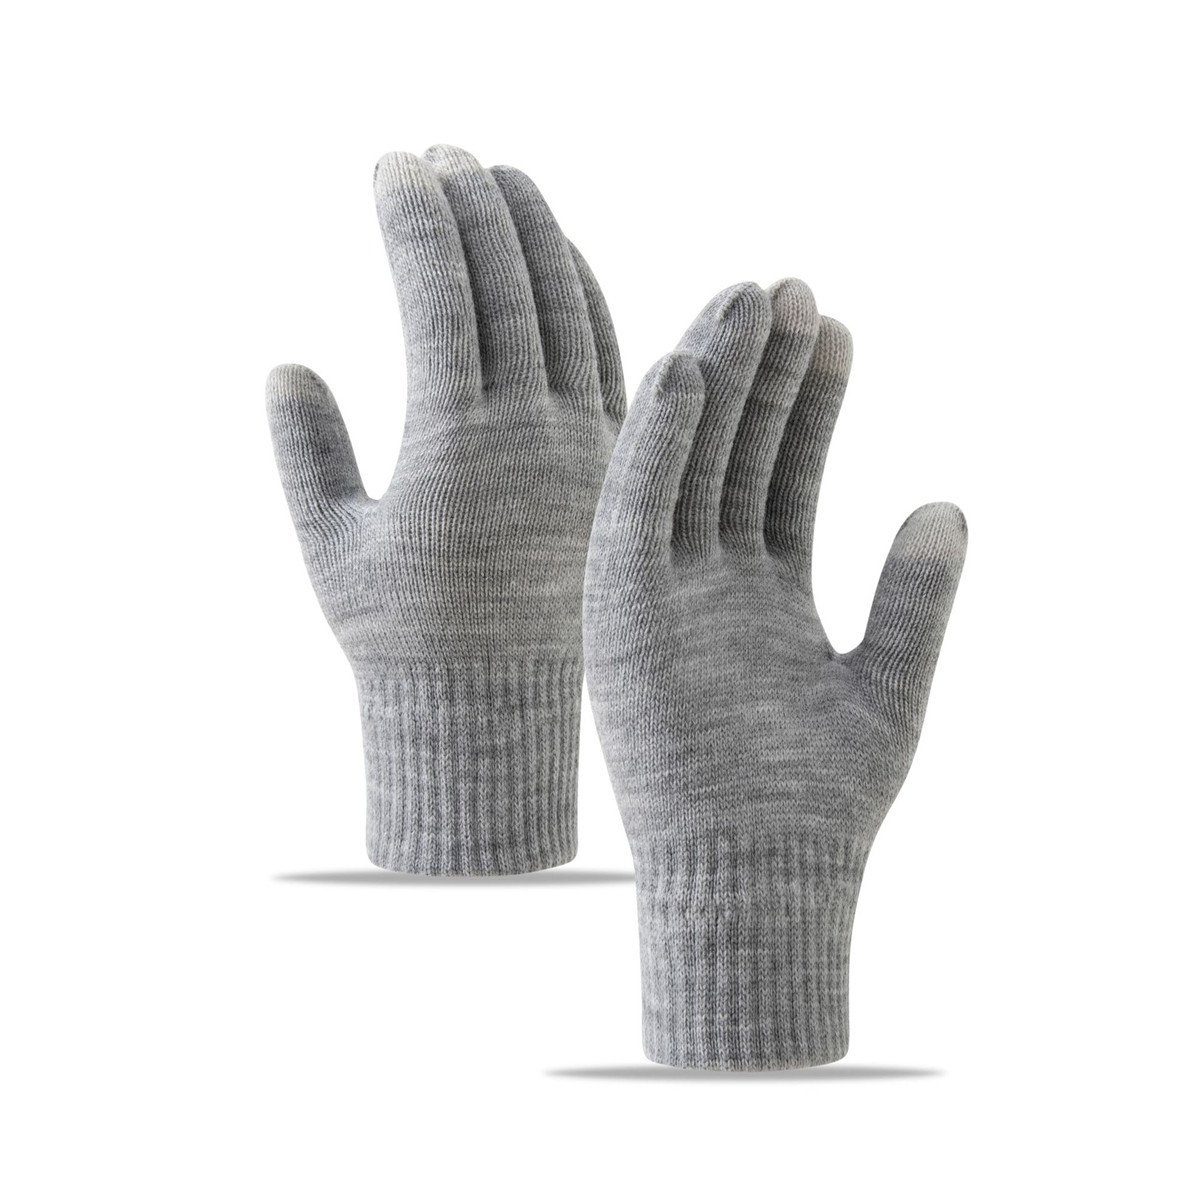 Die Sterne Trikot-Handschuhe Gestrickte Handschuhe mit Schneeflocken-, Strass- und Fleece-Stickerei grau